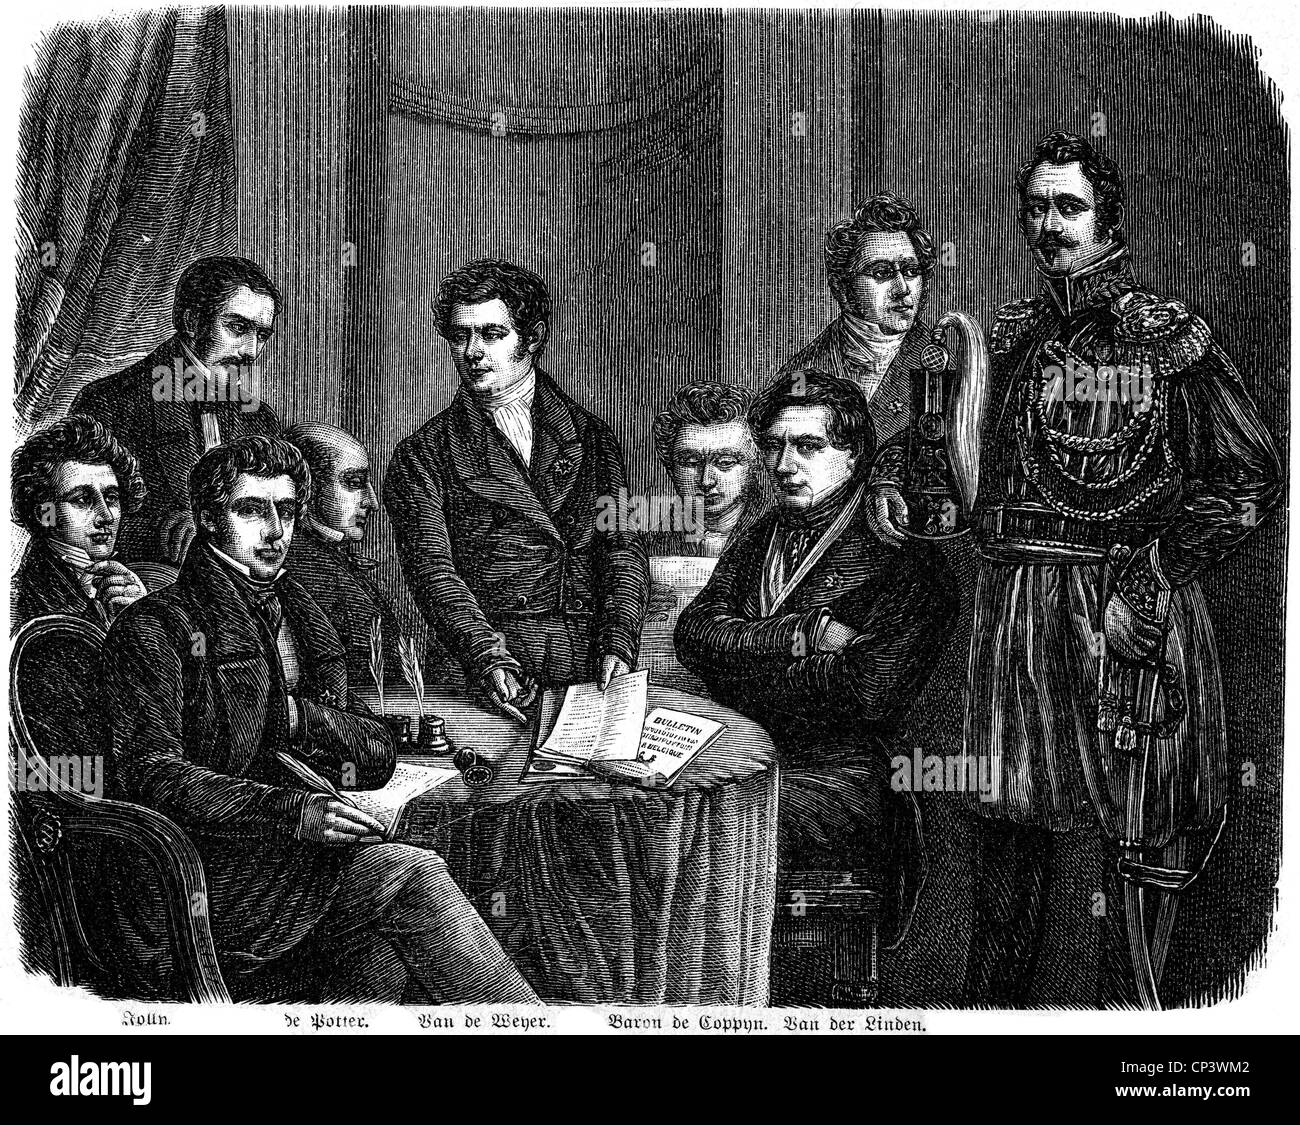 events, Belgian Revolution 1830 1831 Stock Photo 48029186 Alamy